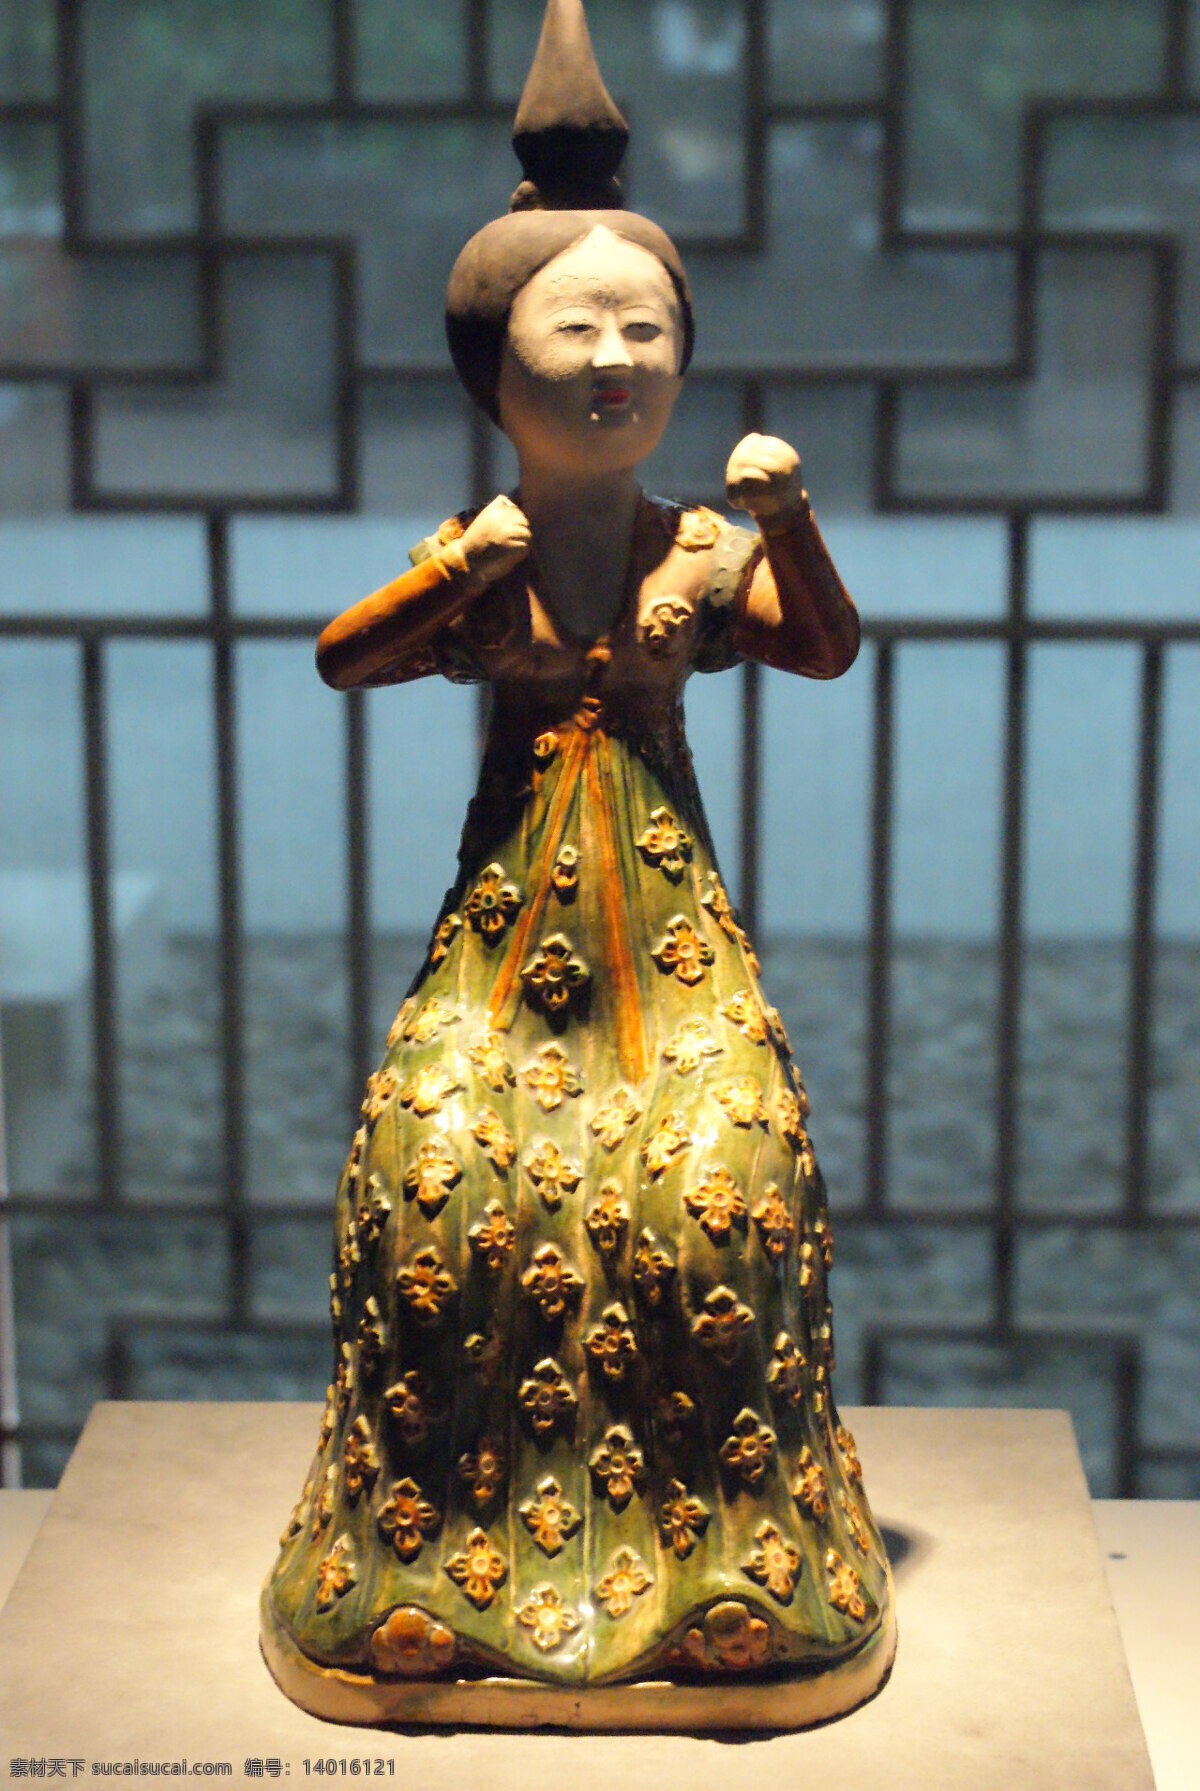 传统文化 雕塑 古代 文化艺术 文物 西安 博物馆 展览品 泥人 陶俑 俑 西安博物馆 彩绘俑头 女俑 仕女陶俑 装饰素材 展示设计